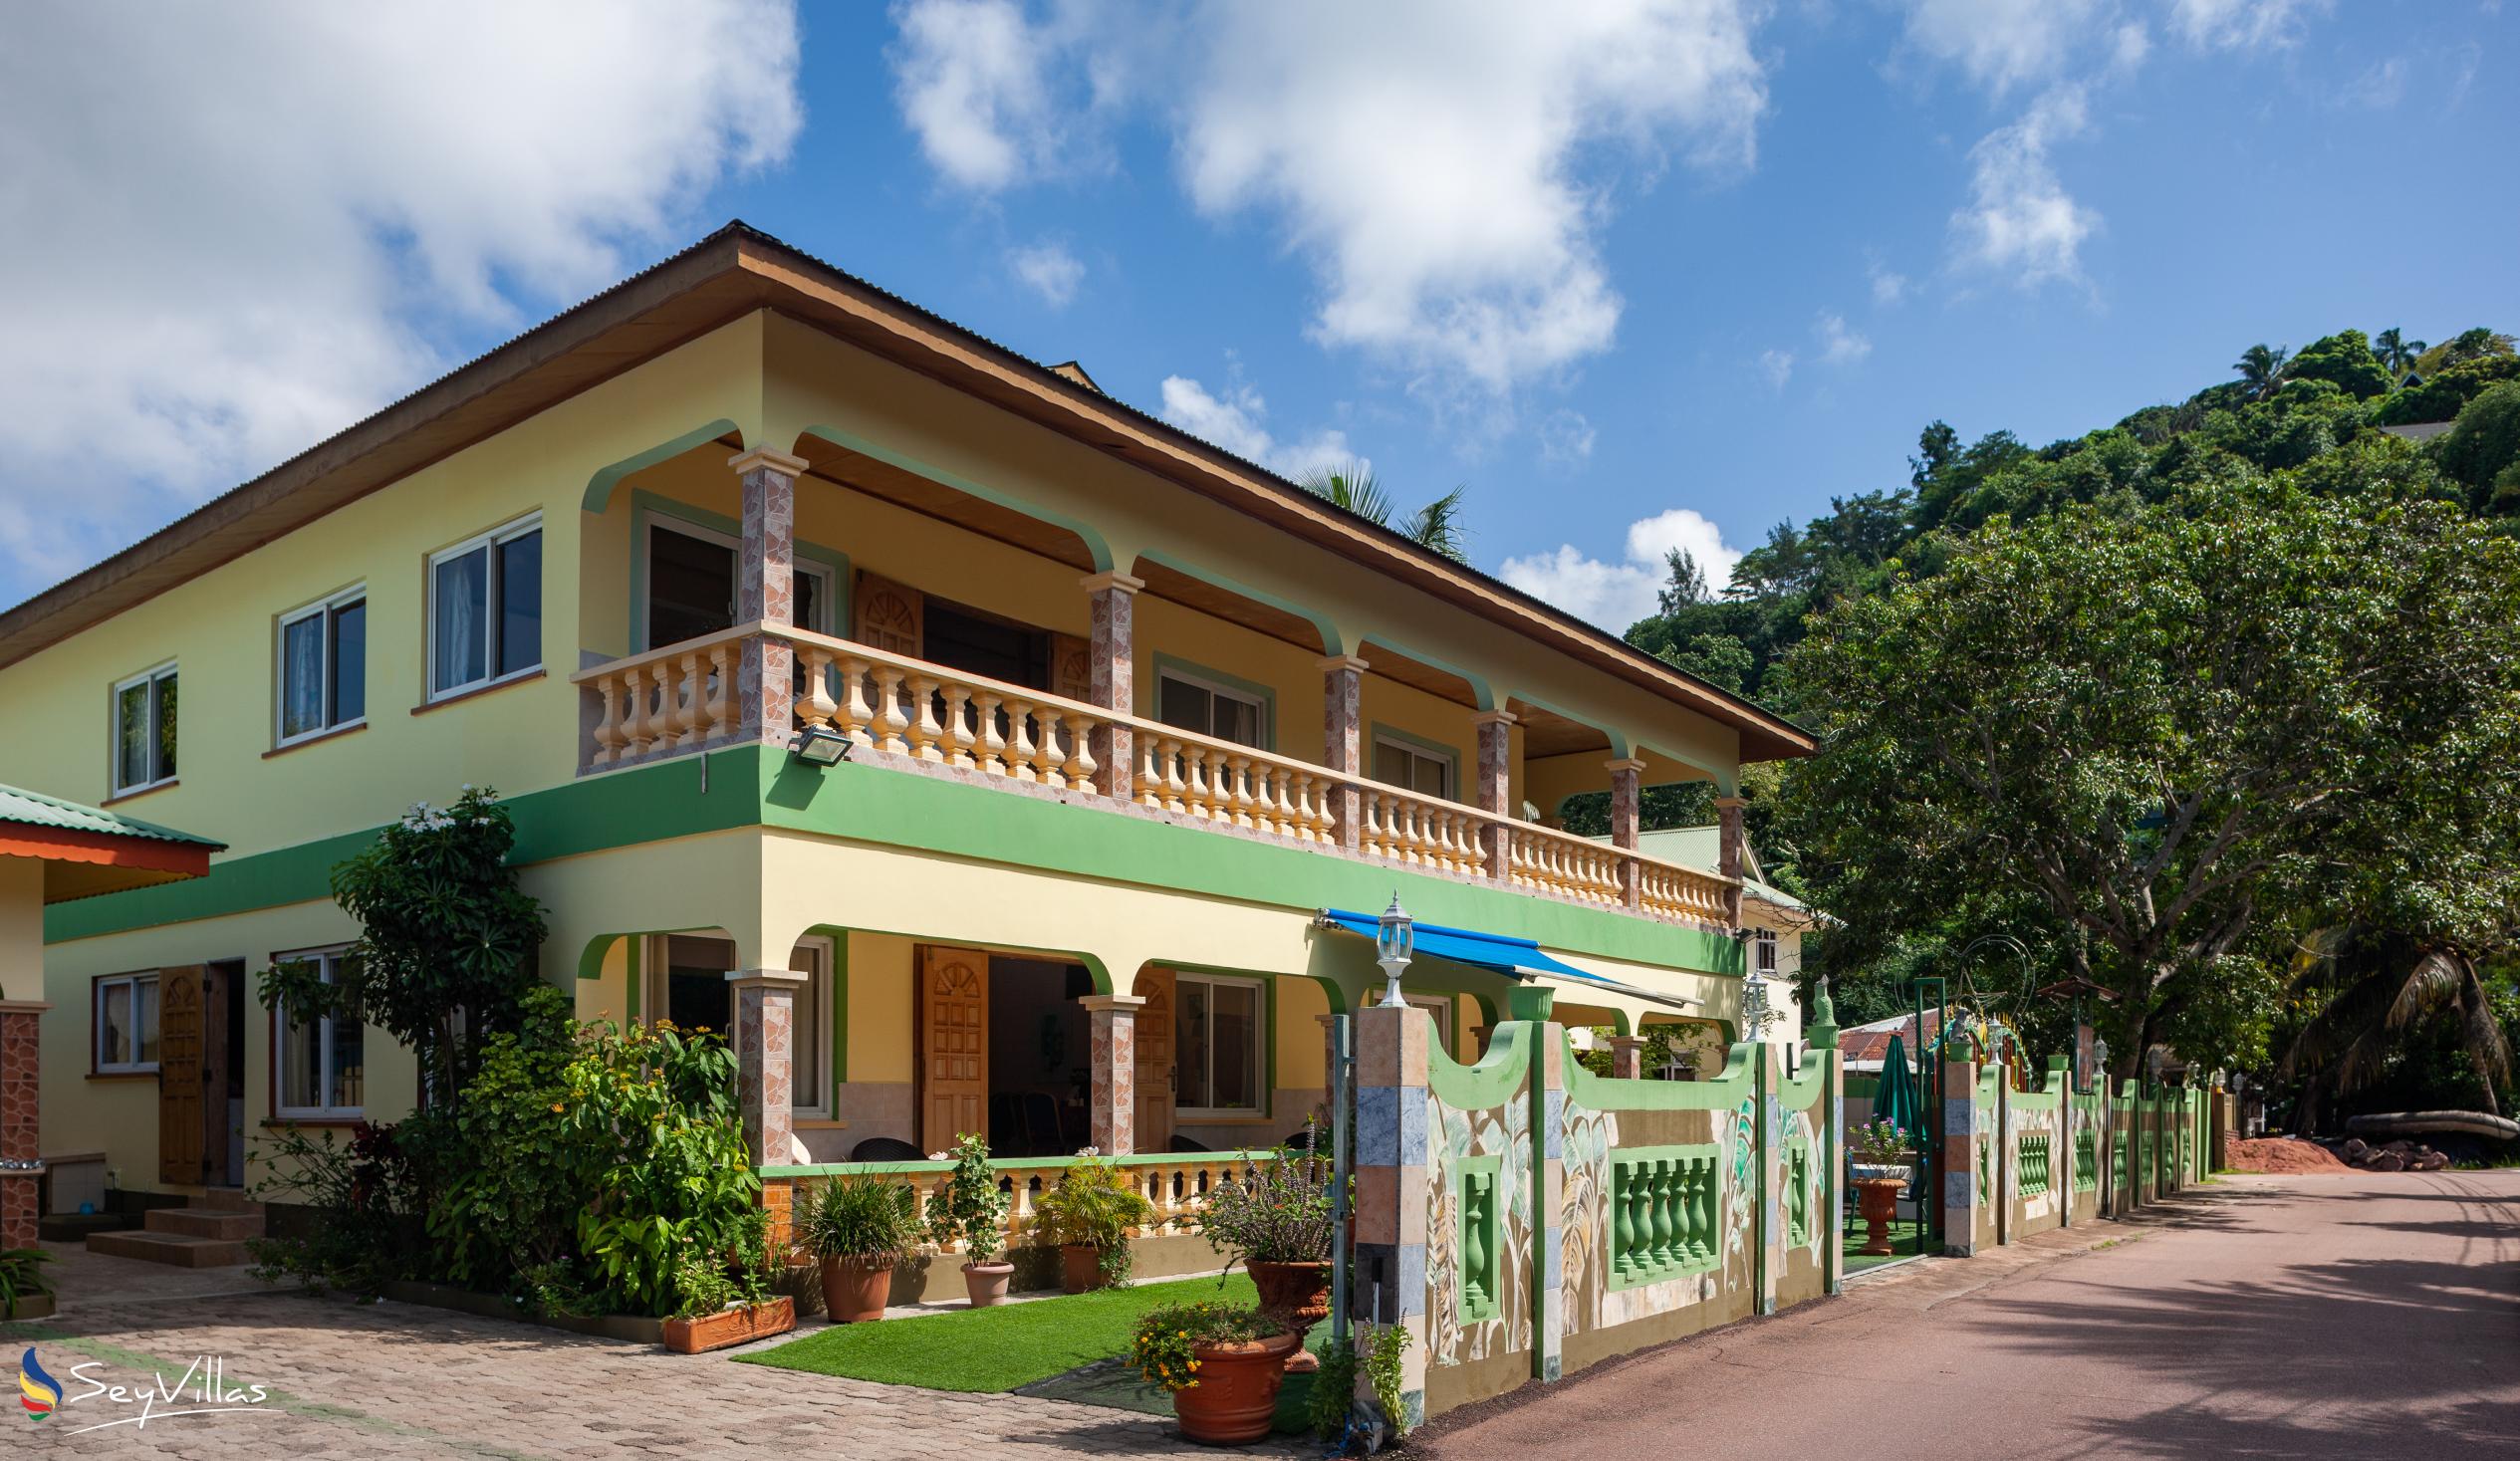 Foto 29: Villa Bananier - Aussenbereich - Praslin (Seychellen)